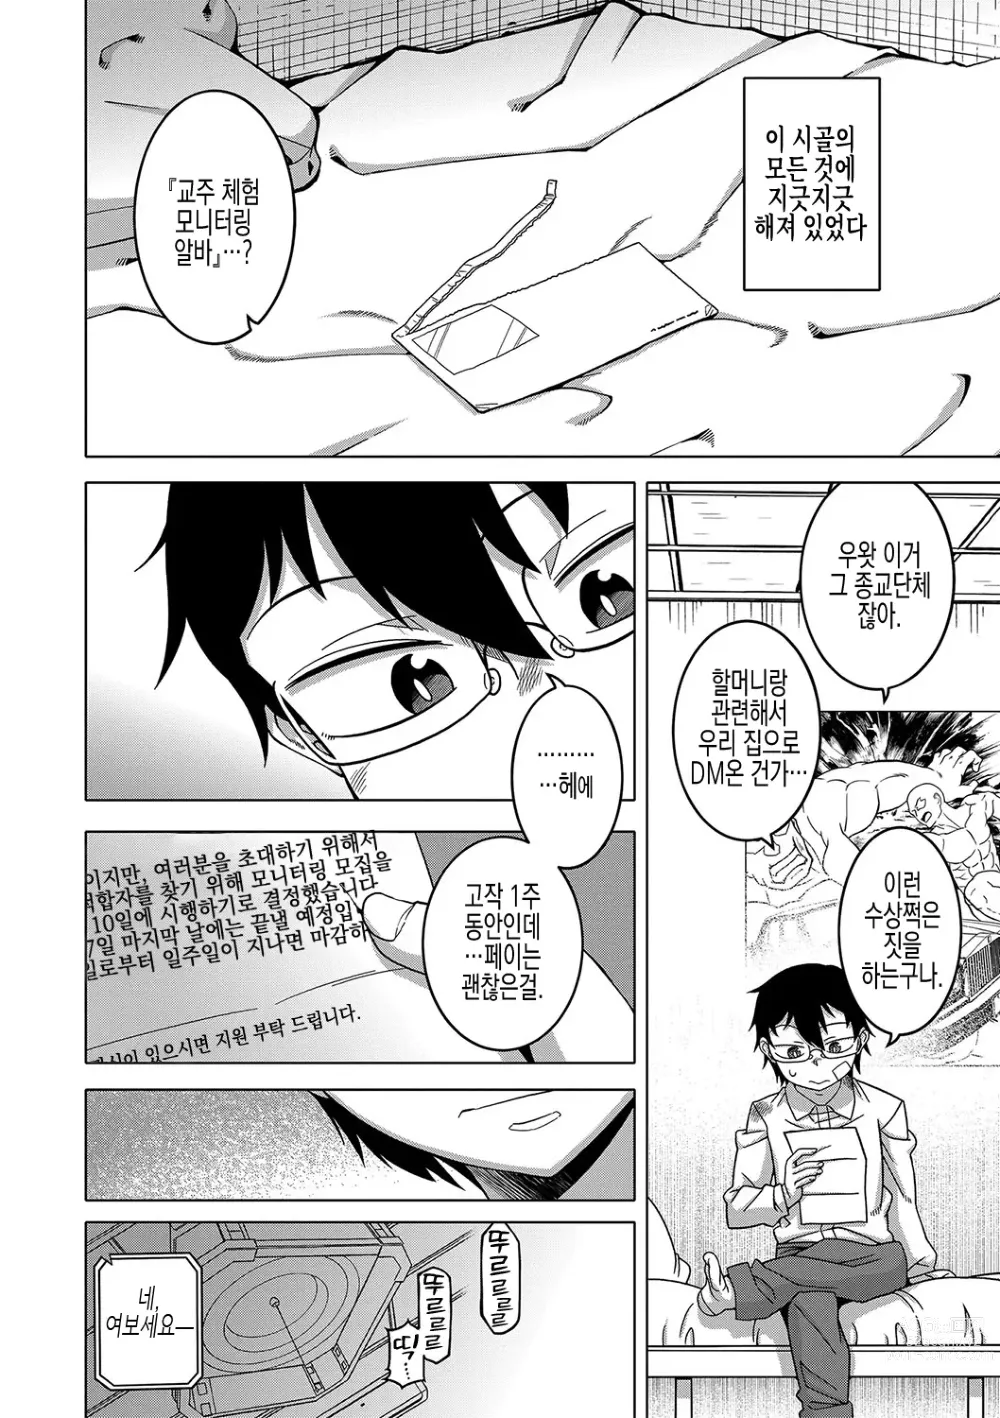 Page 10 of manga 교주님을 만드는 법